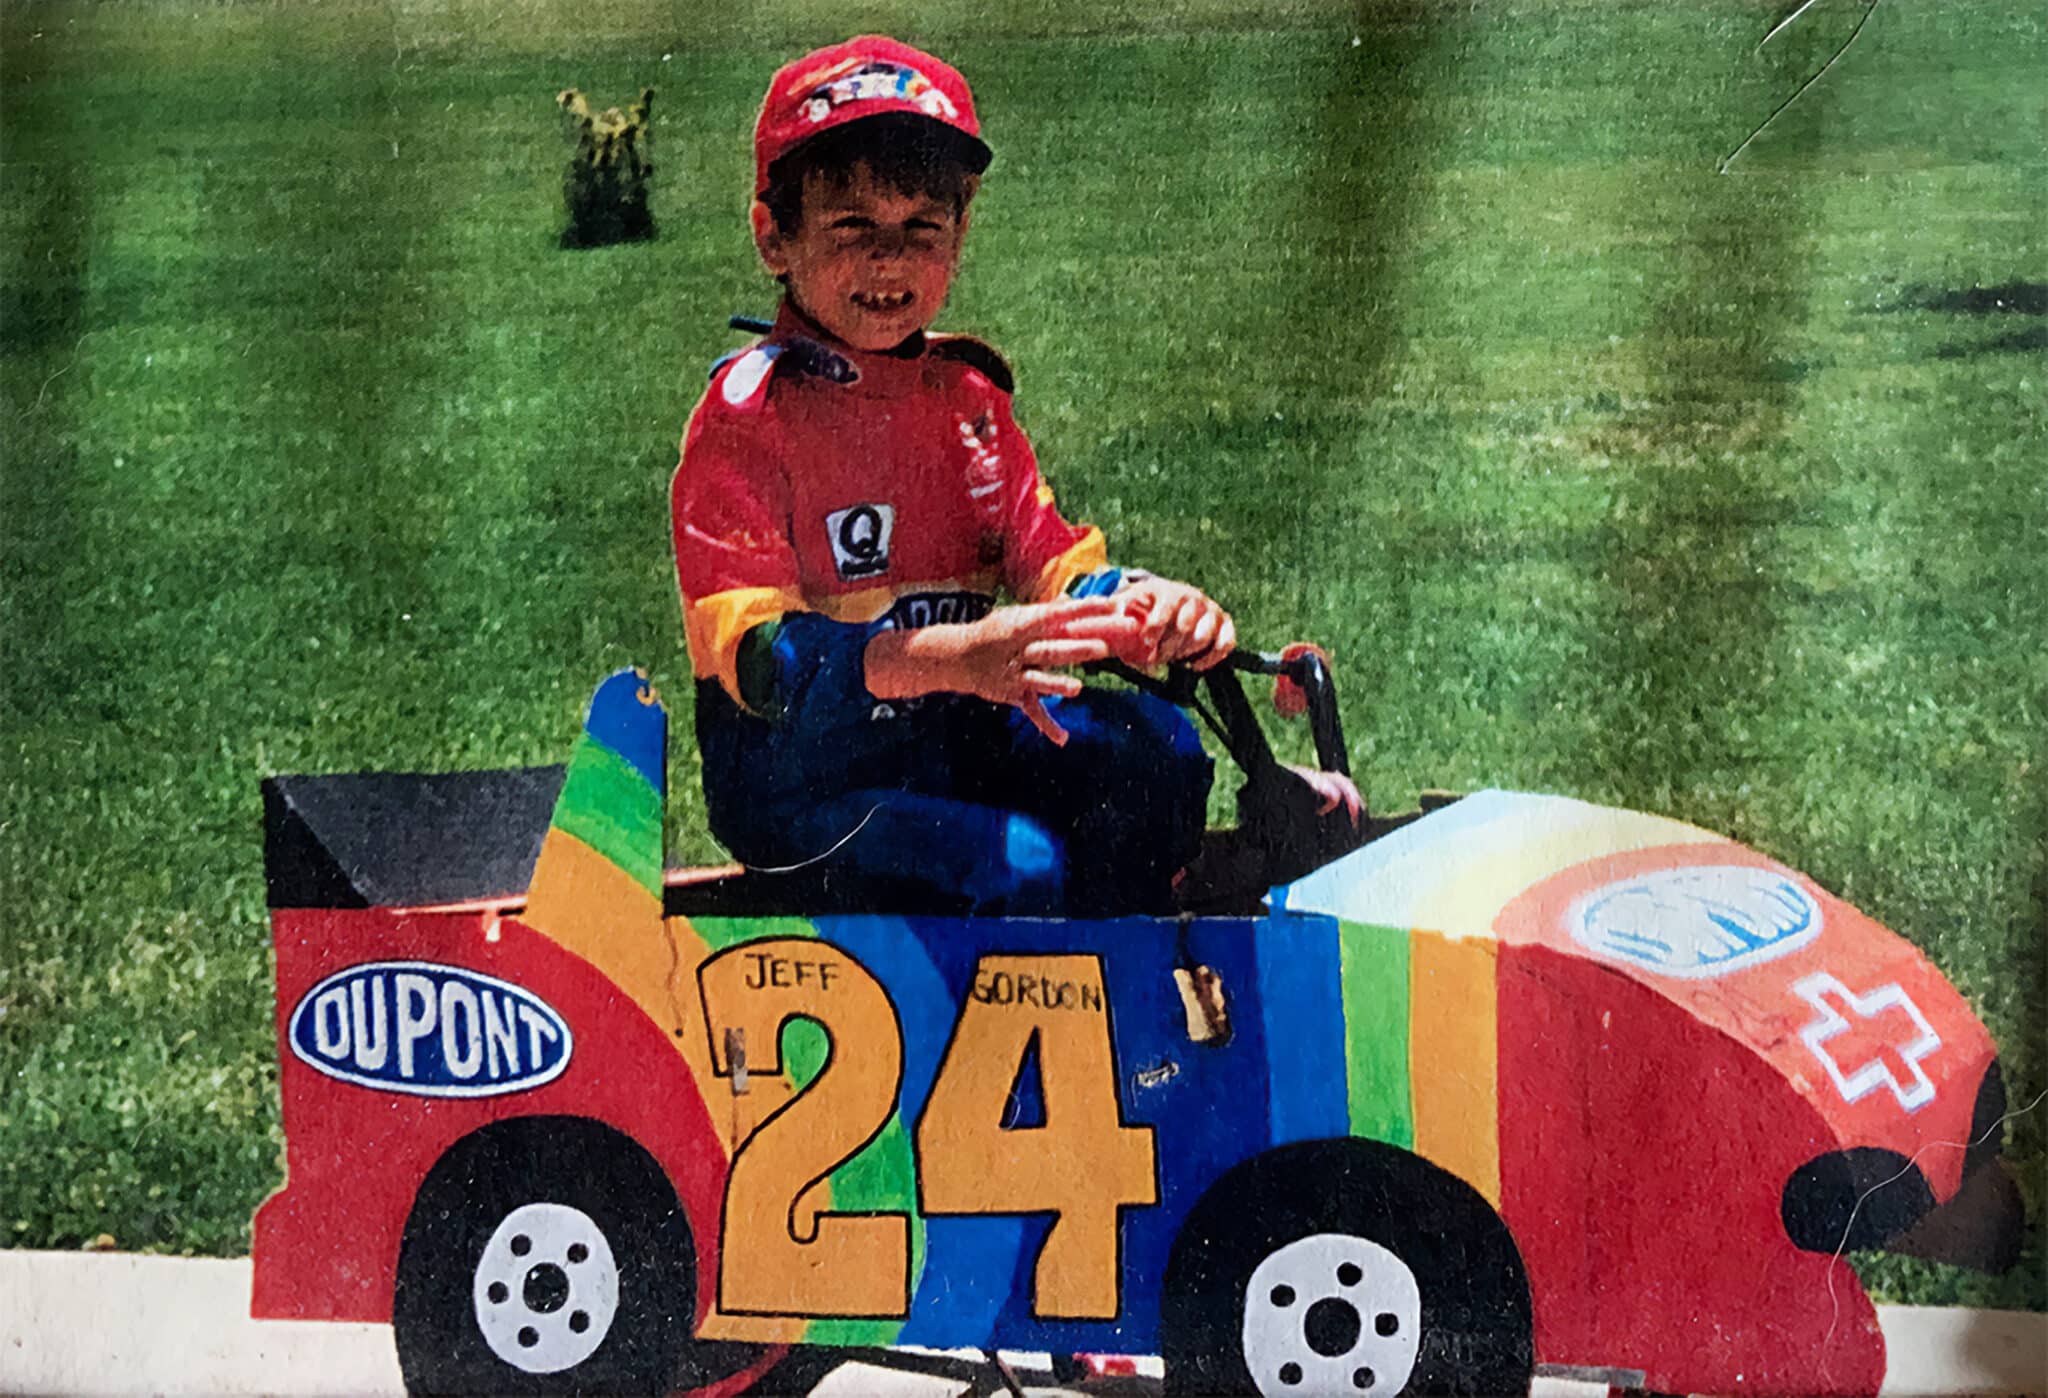 Curt Horsemann's grandson in a dirt track racing box car.